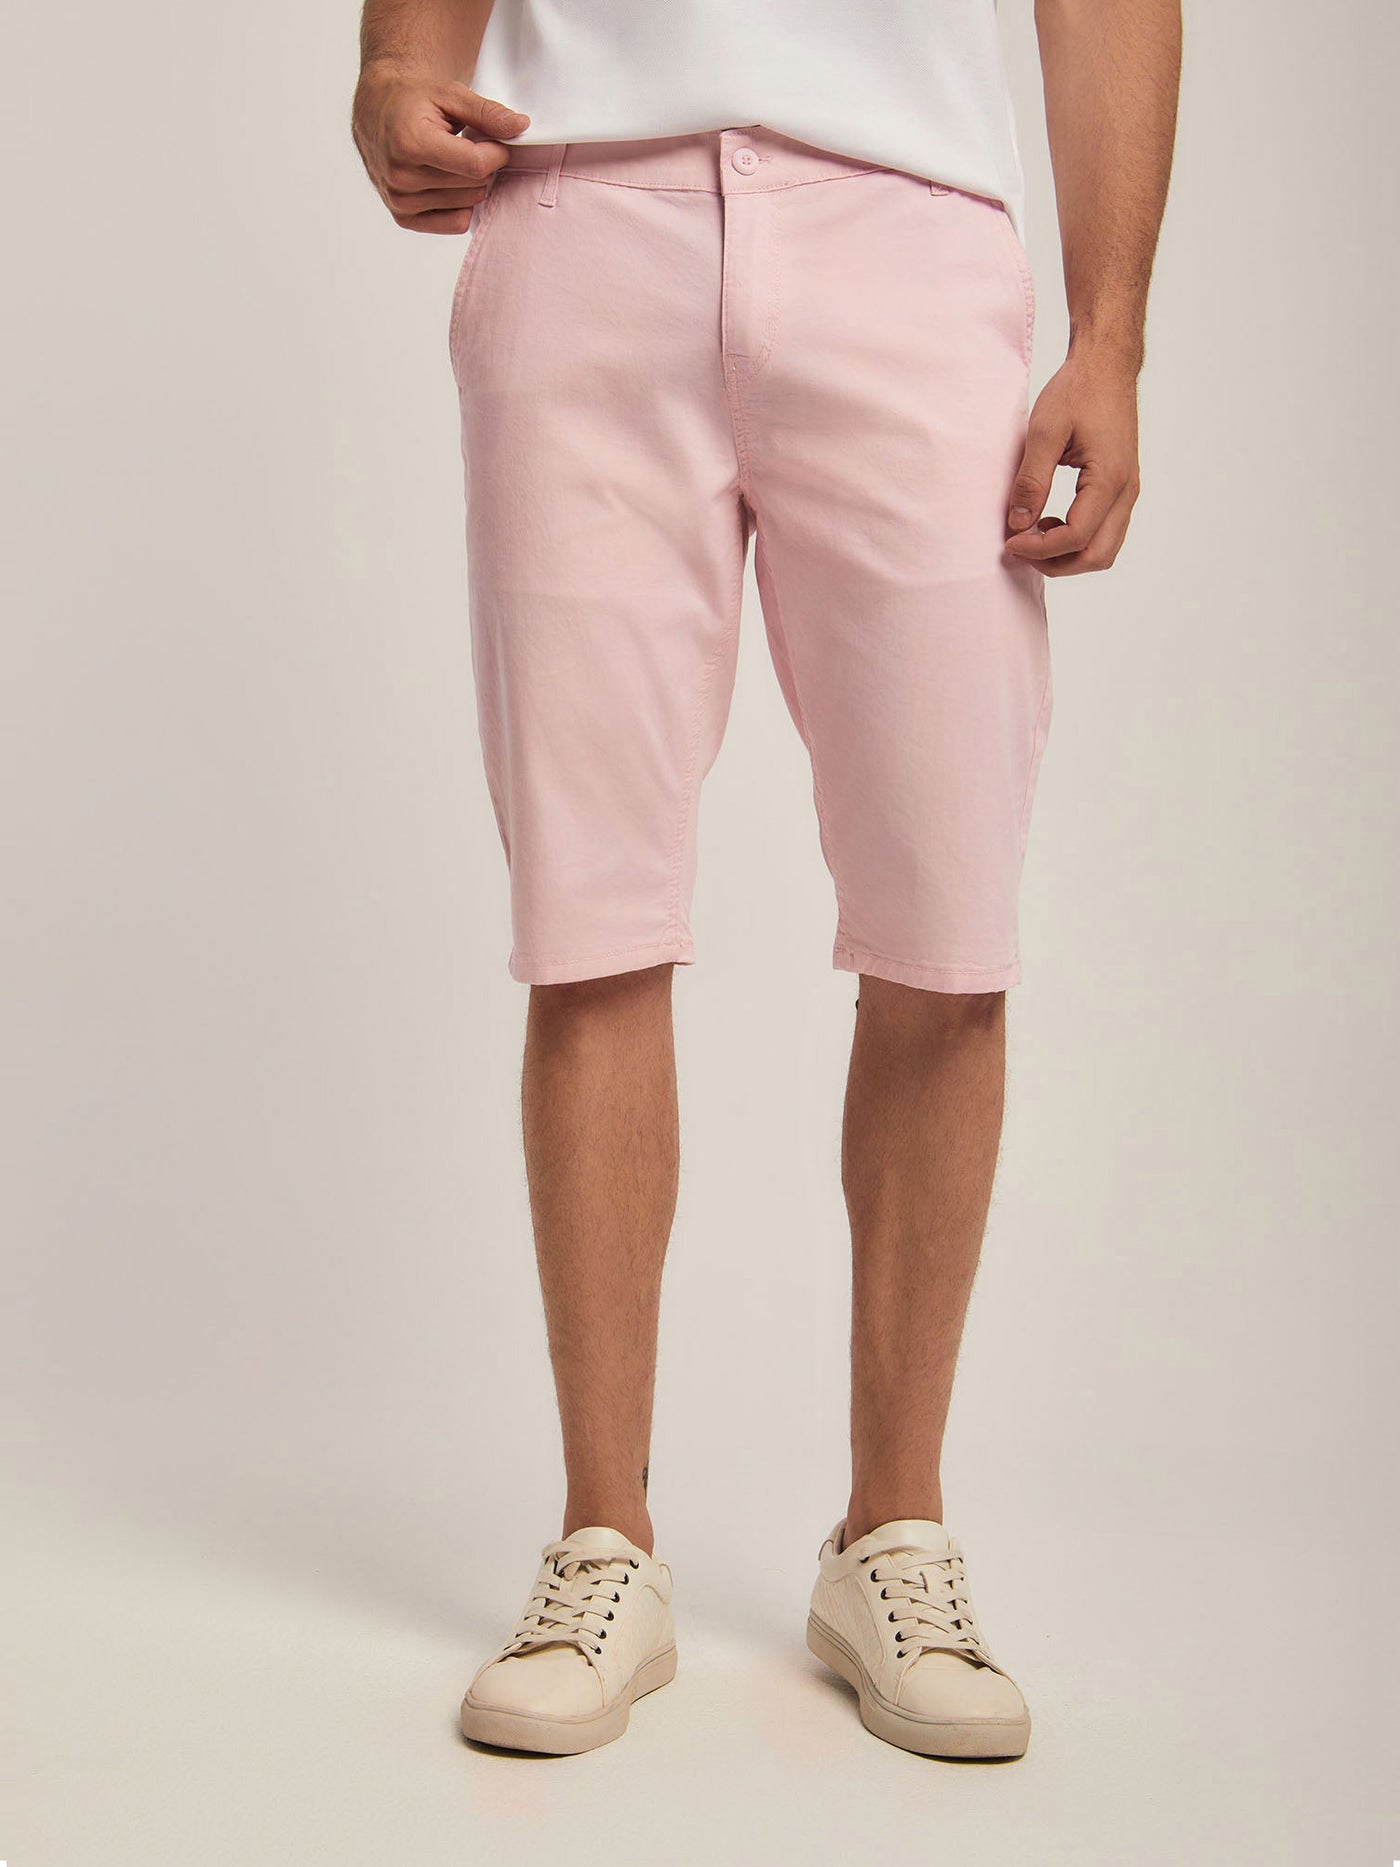 Shorts - Plain - With Pockets